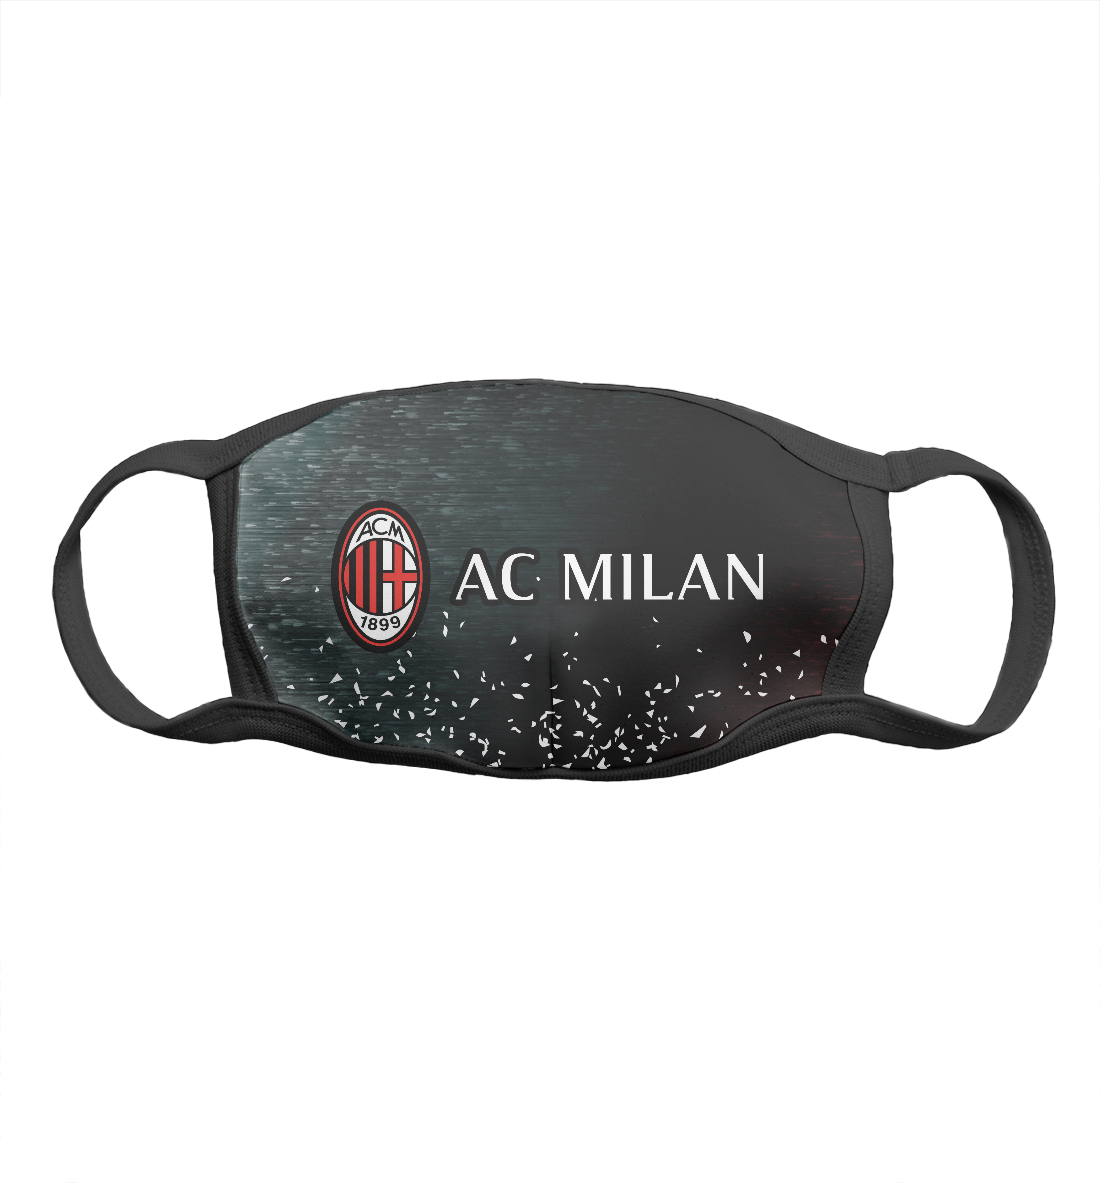 Мужская Маска AC Milan / Милан, артикул ACM-873489-msk-2mp